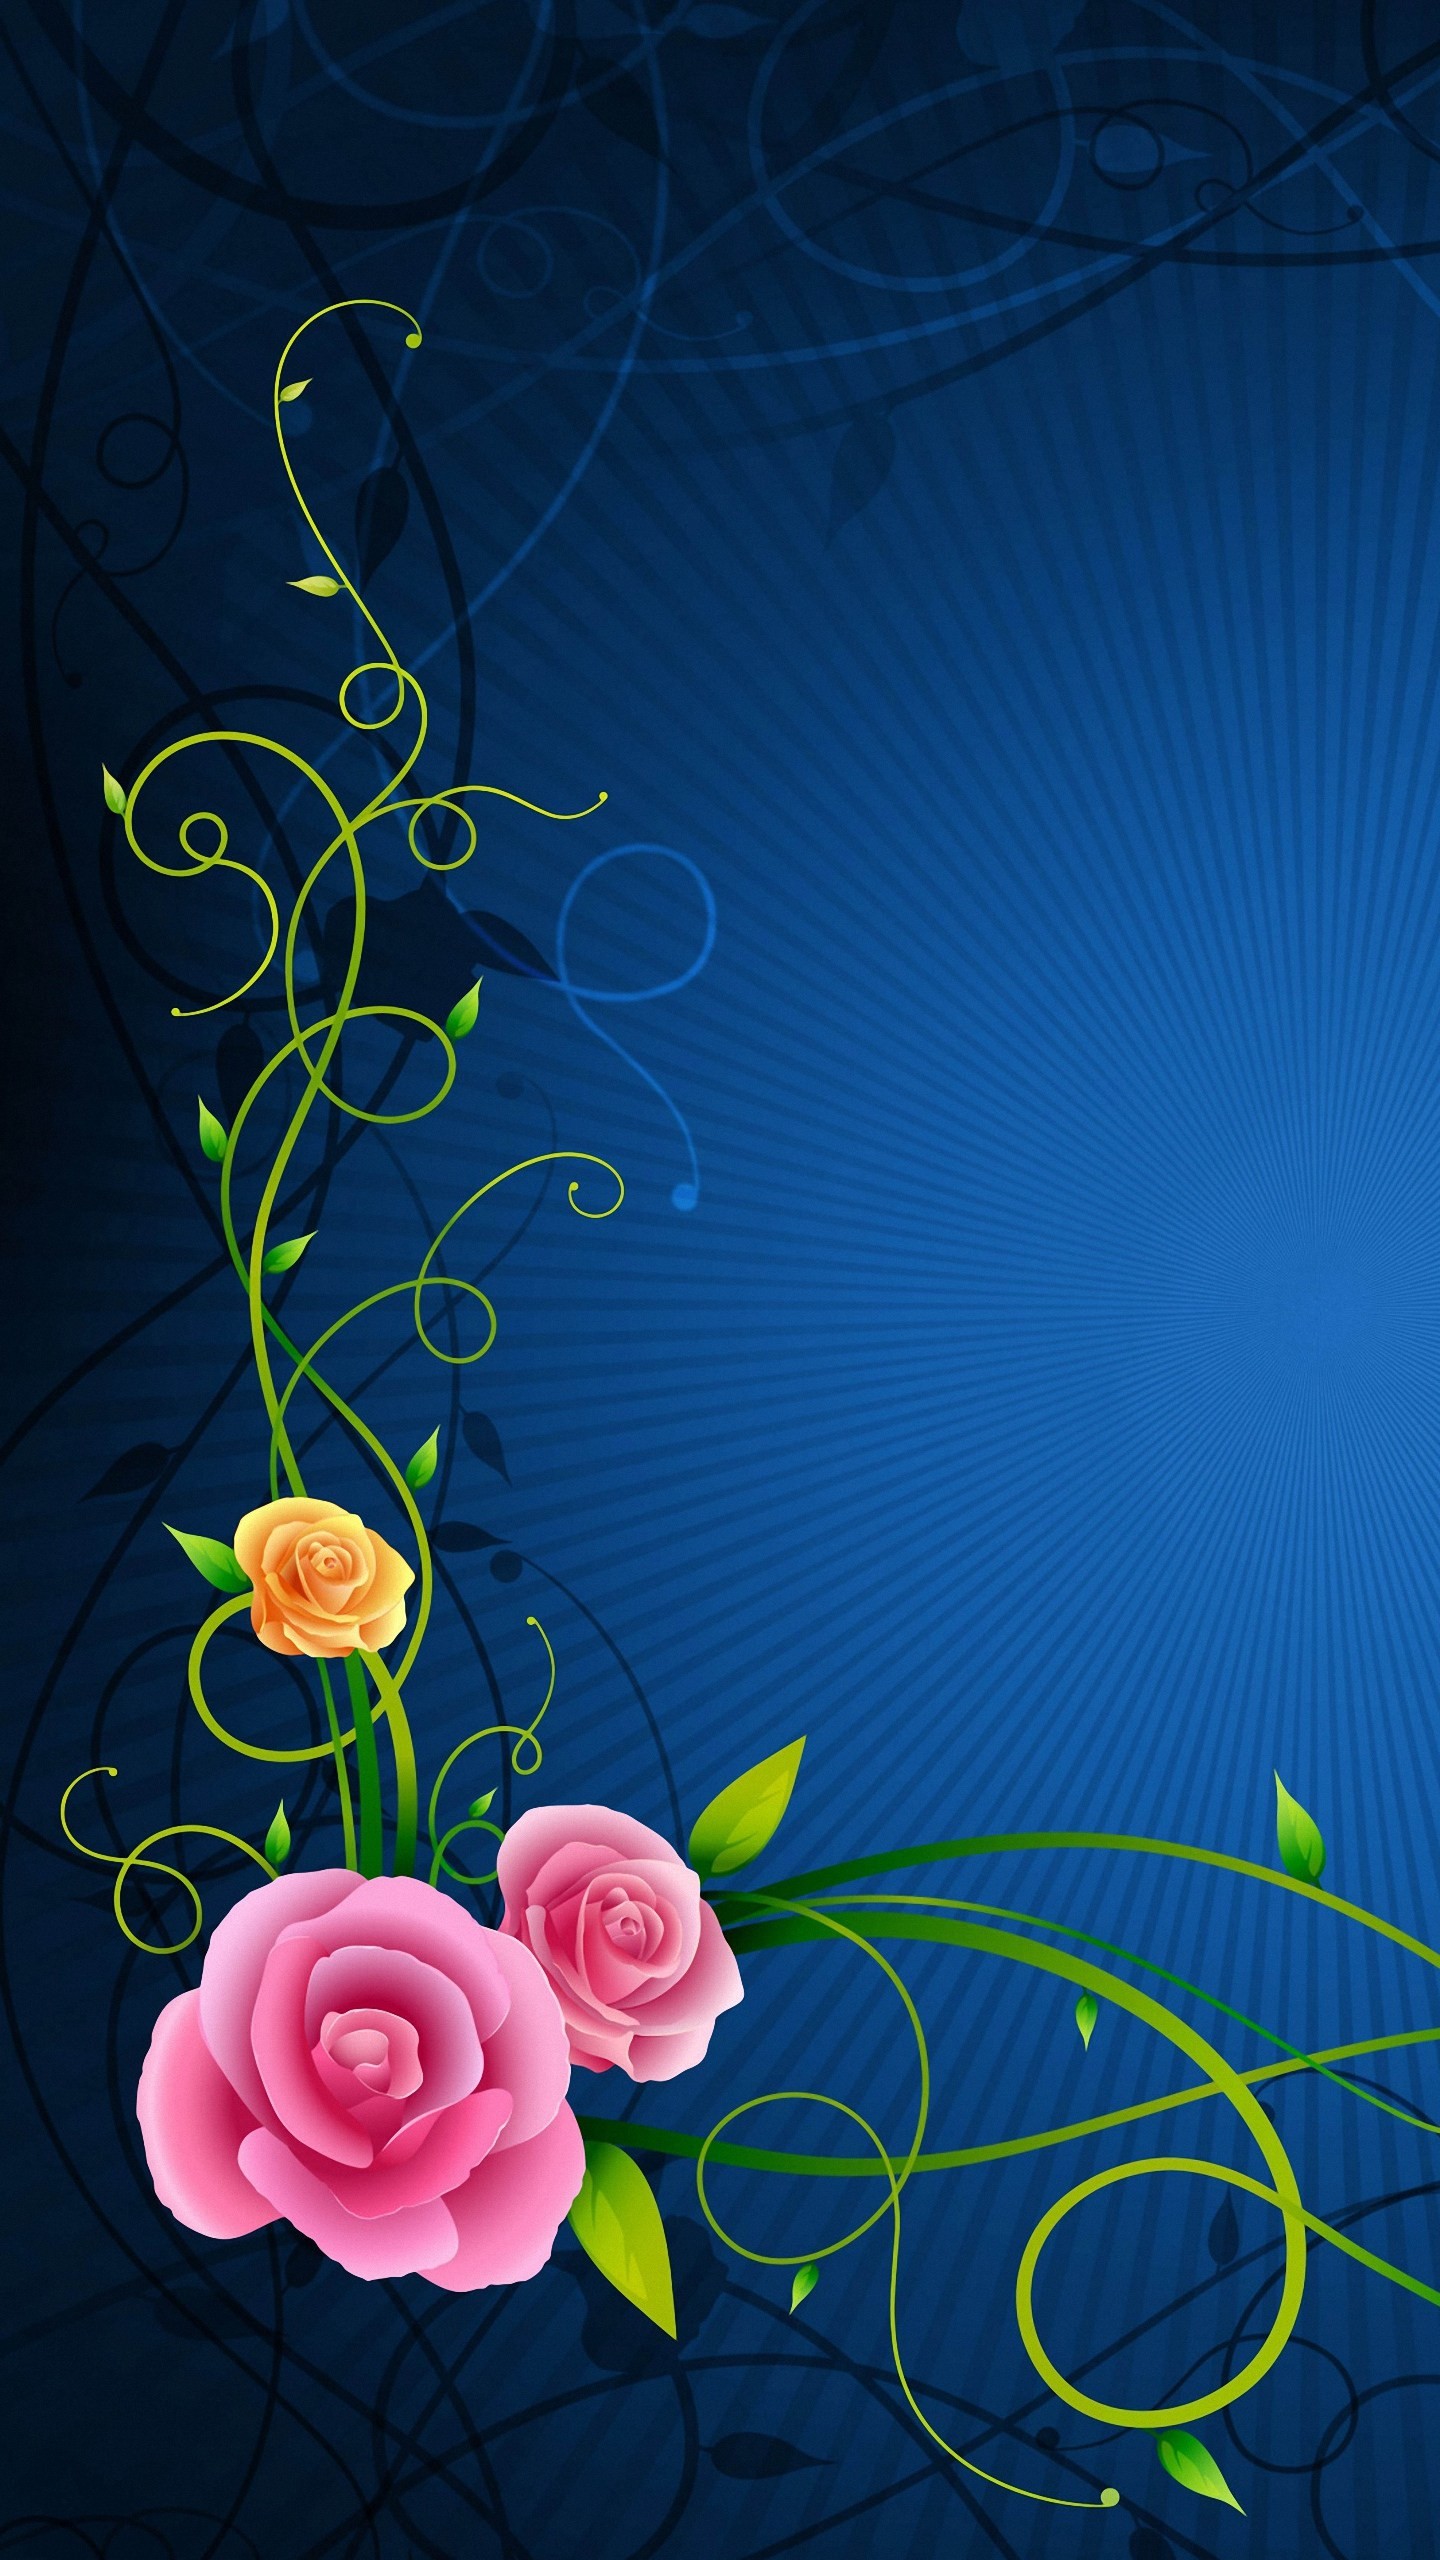 アンドロイド用のかわいい壁紙,青い,花柄,花,工場,フラワーアレンジメント